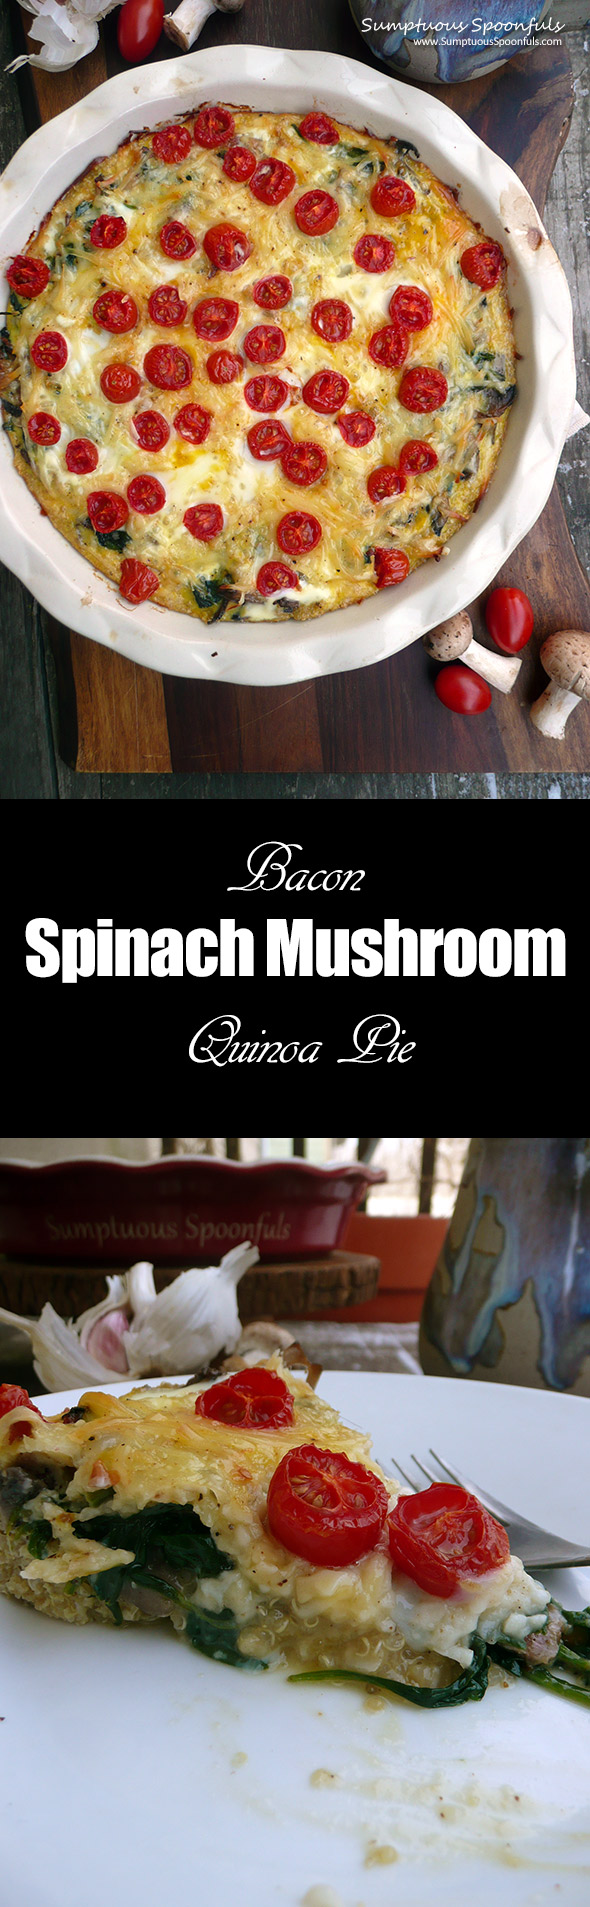 Bacon Spinach Mushroom Quinoa Pie ~ Sumptuous Spoonfuls #healthy #breakfast #recipe